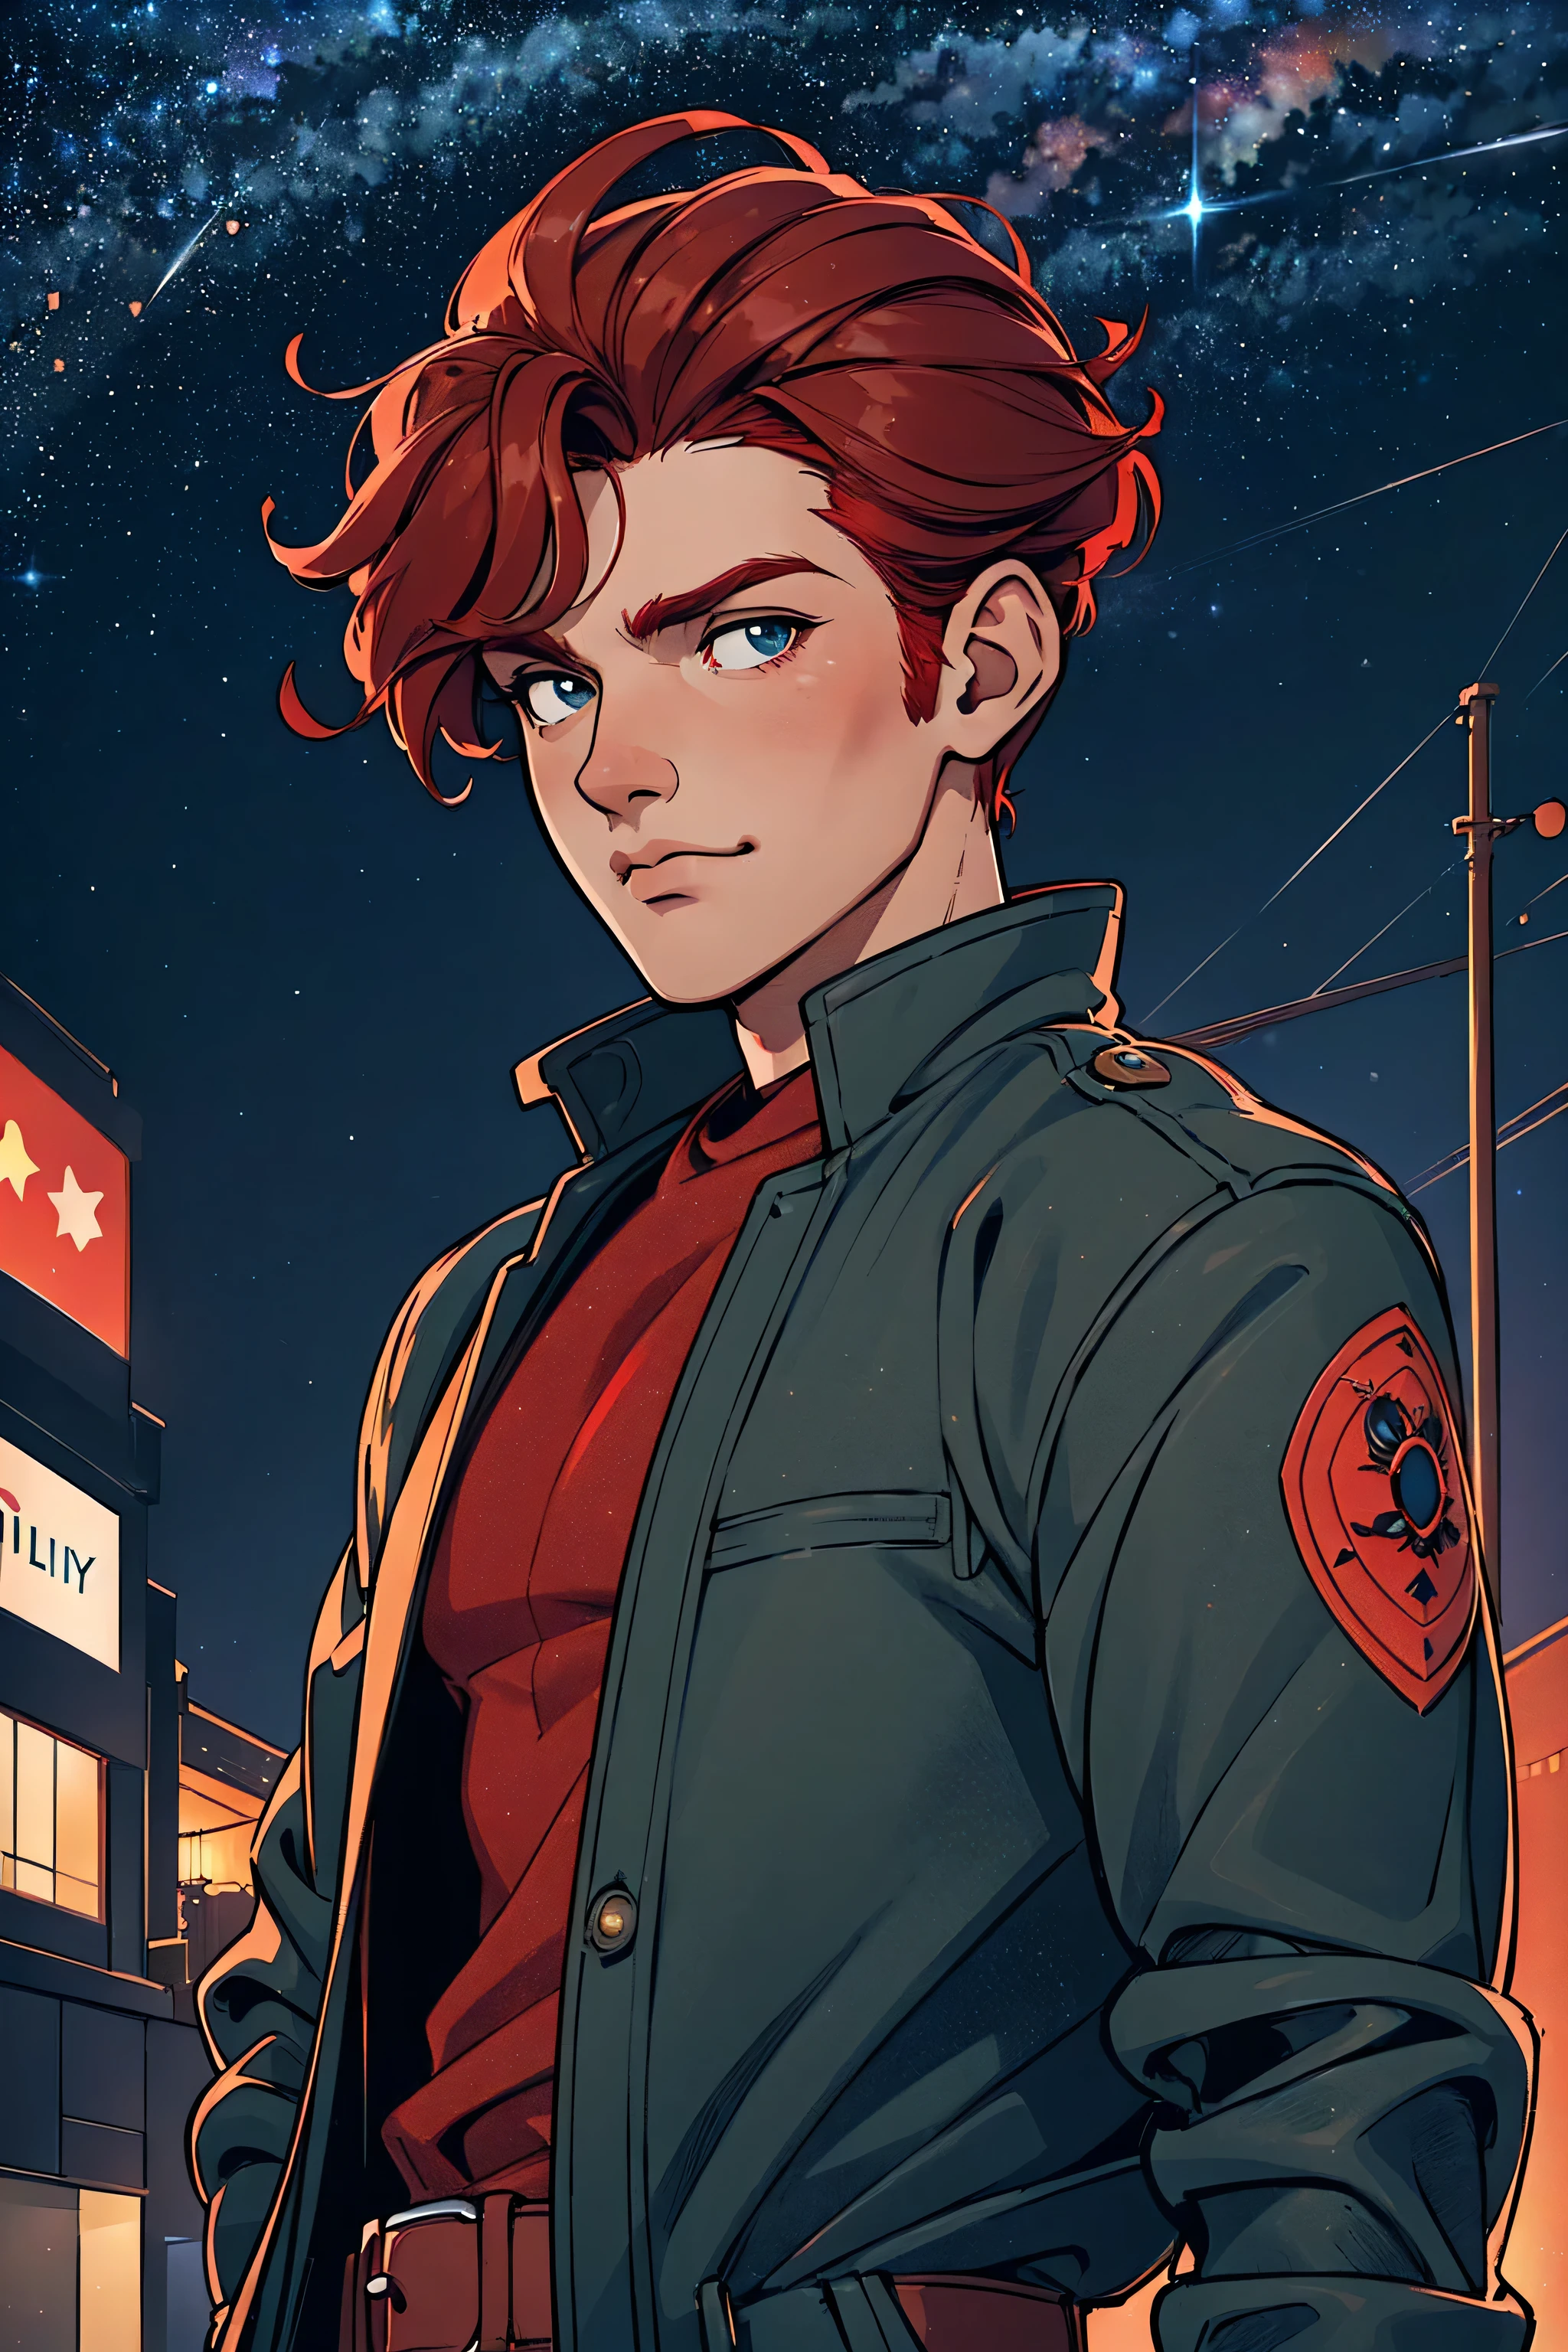 한 남자, 멋있는, 건장한, 빨강 머리, 재킷을 입고, 밤에 도시 도로에 위치, 부드러운 도시 조명, 별이 빛나는 하늘을 배경으로, 만화 예술 스타일, 자연스러운 포즈로, 최고의 품질, 로라아이즈